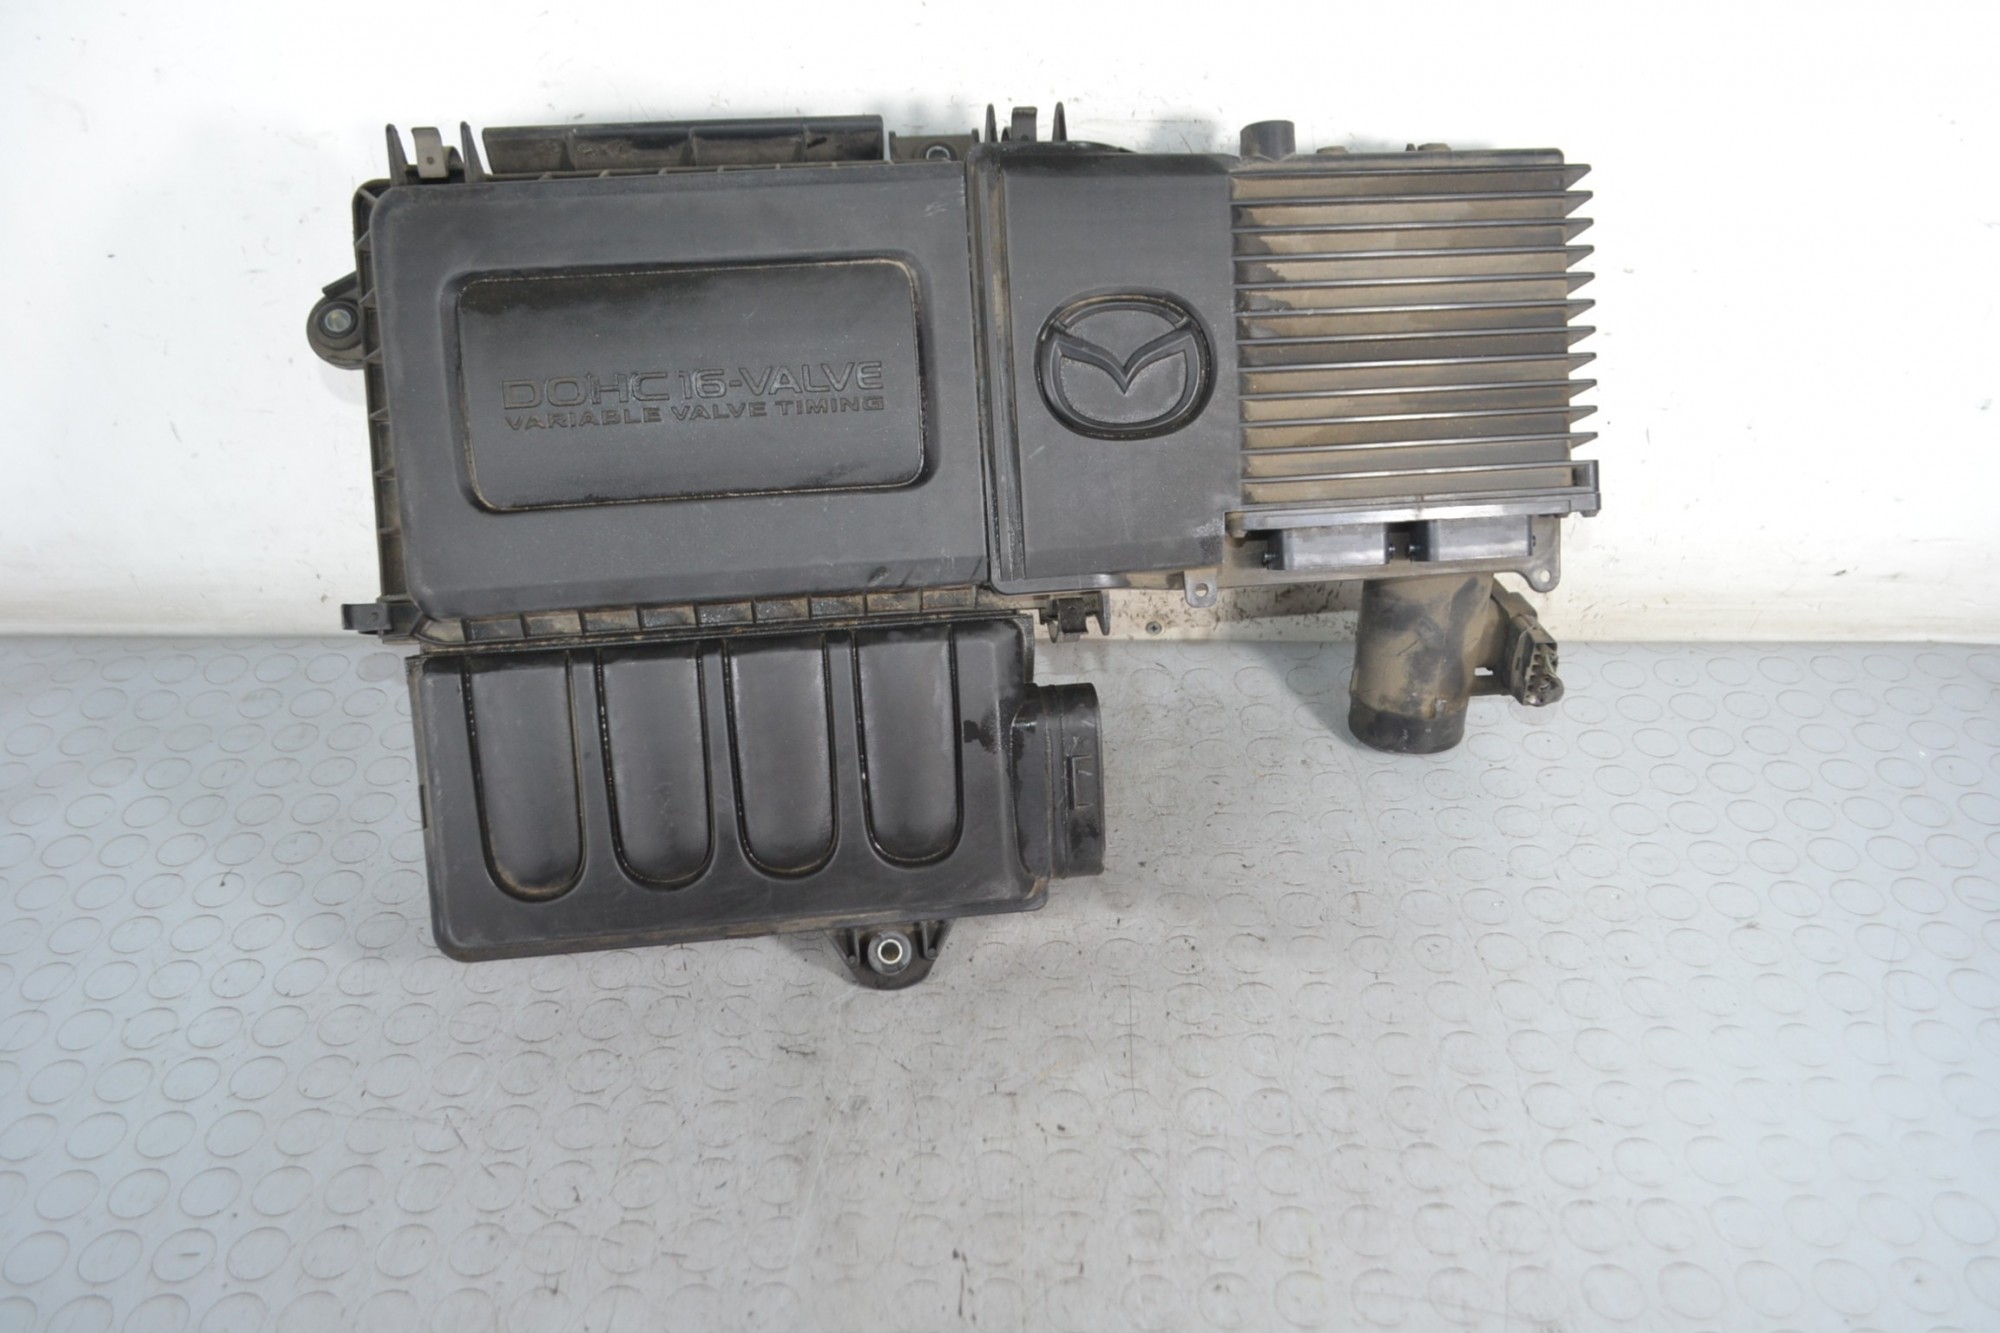 Centralina ECU + Scatola filtro aria Mazda 2 Dal 2007 al 2014 Cod 100140-9894 1.3 benzina  1679997377854